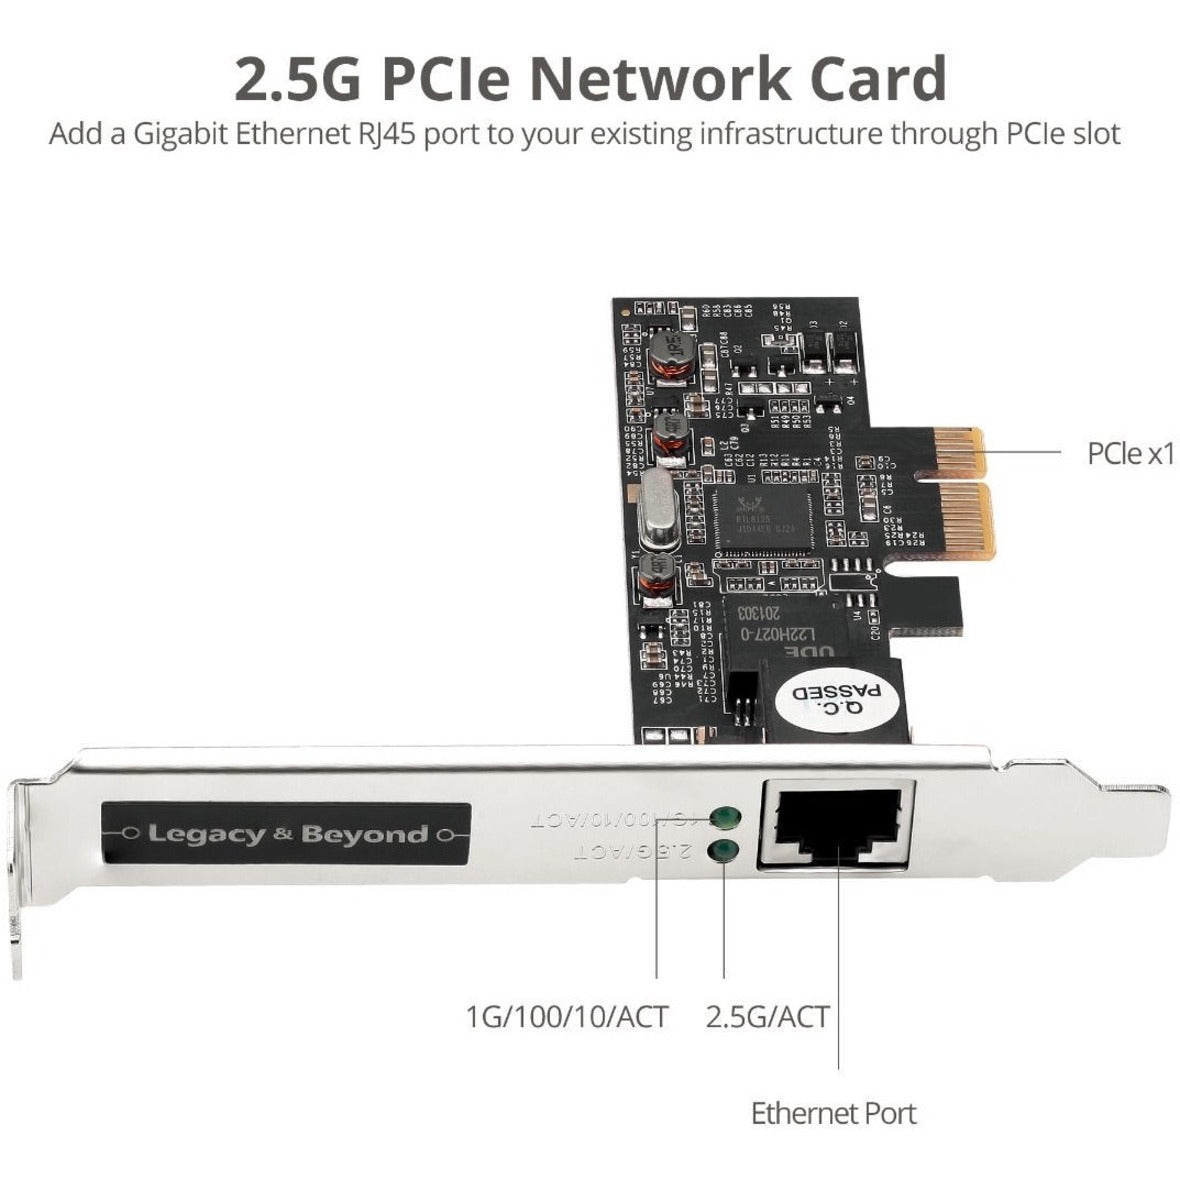 بطاقة SIIG LB-GE0611-S1 متعددة السرعات 4 جيجابت إيثرنت الفردية 2.5G ، توصيل الشبكة عالية السرعة  العلامة التجارية: سيج ترجمة العلامة التجارية: سيج